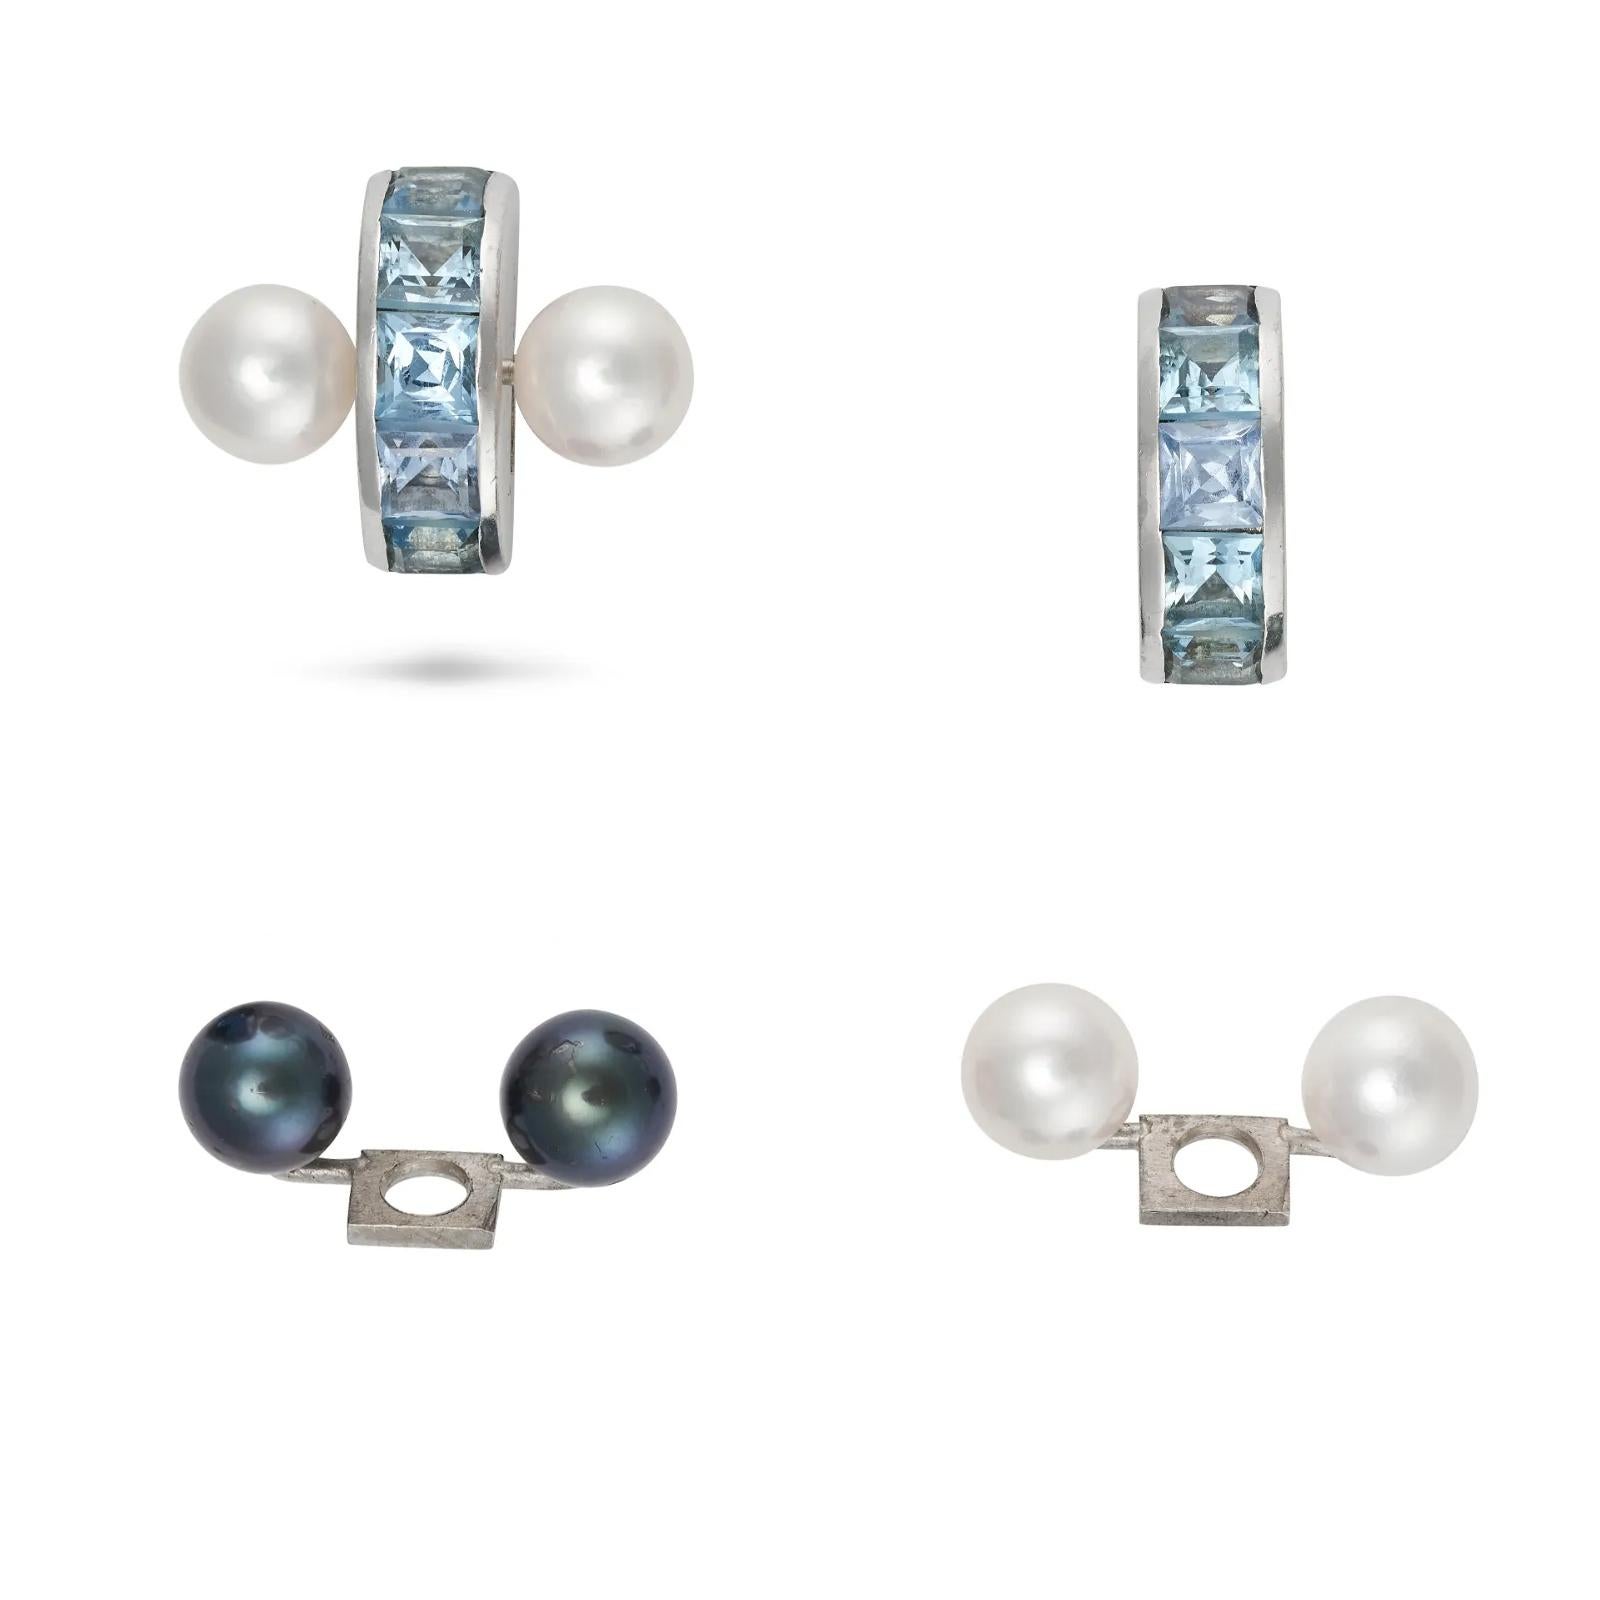 Ein Paar austauschbare Aquamarin- und Perlenohrringe. Jeder Ohrring kann in wenigen Minuten von weißen Perlen in dunkelgraue Perlen oder einfach in Aquamarin-Ohrstecker verwandelt werden.

Sie brauchen nur einen Schraubenzieher, öffnen Sie nur eine